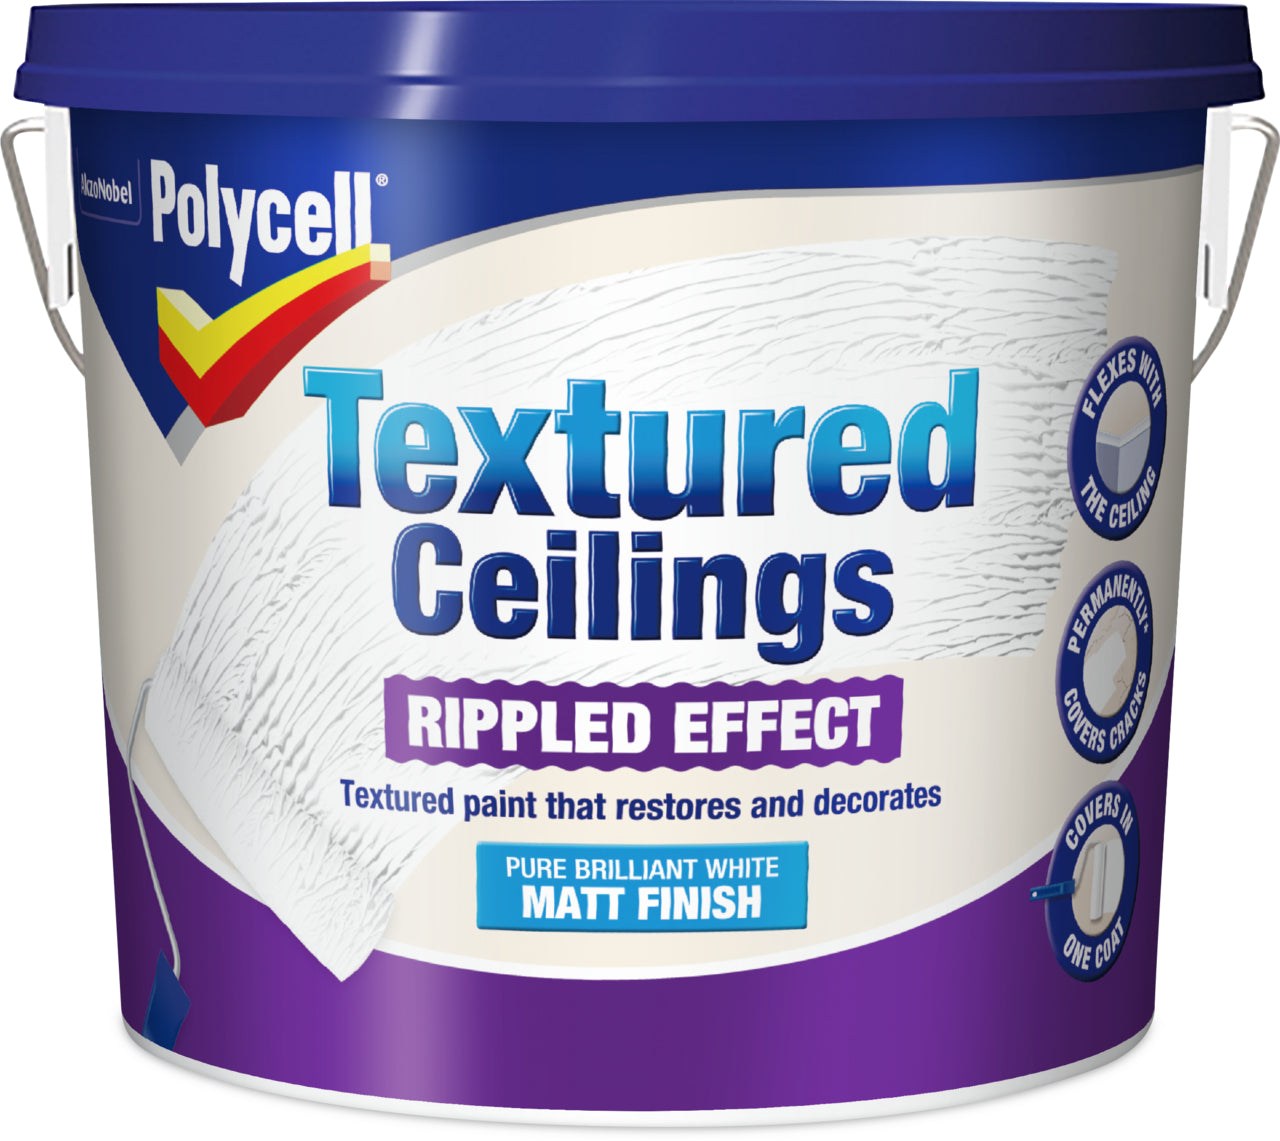 Polycell Textured Ceilings Ripple Effect Matt 5L